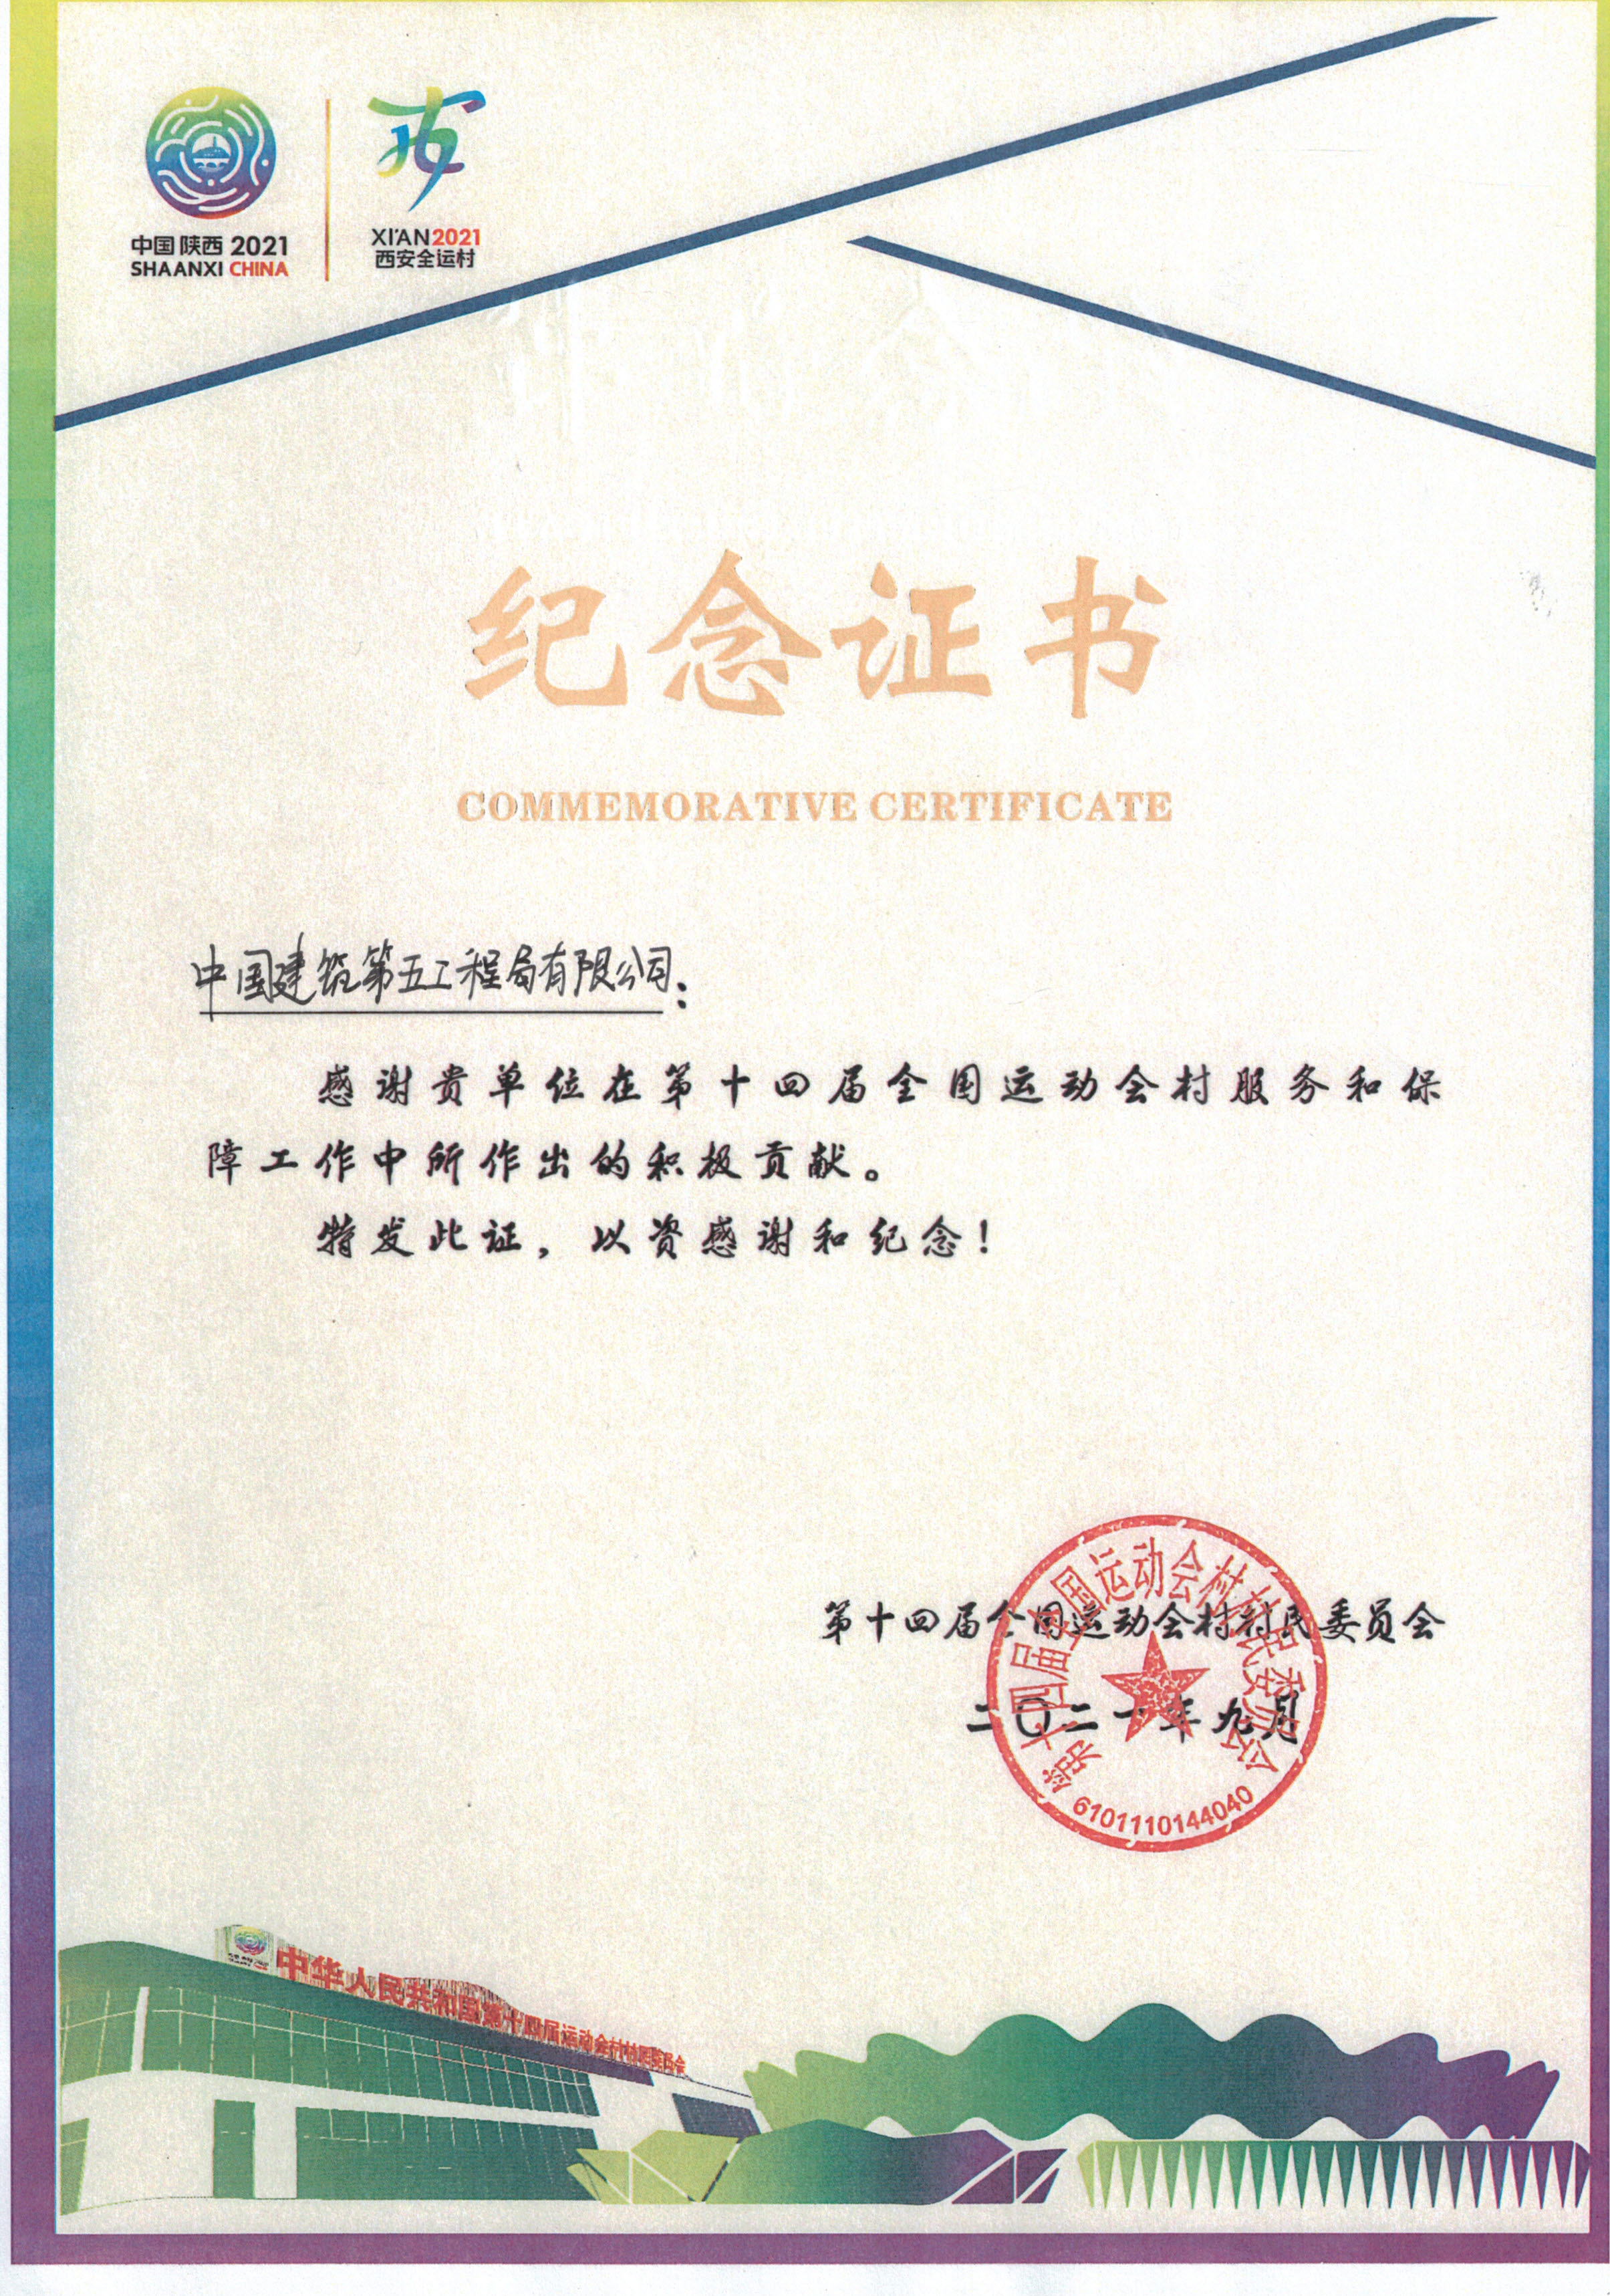 河南公司西安港务区中小学项目荣获第十四运会纪念证书